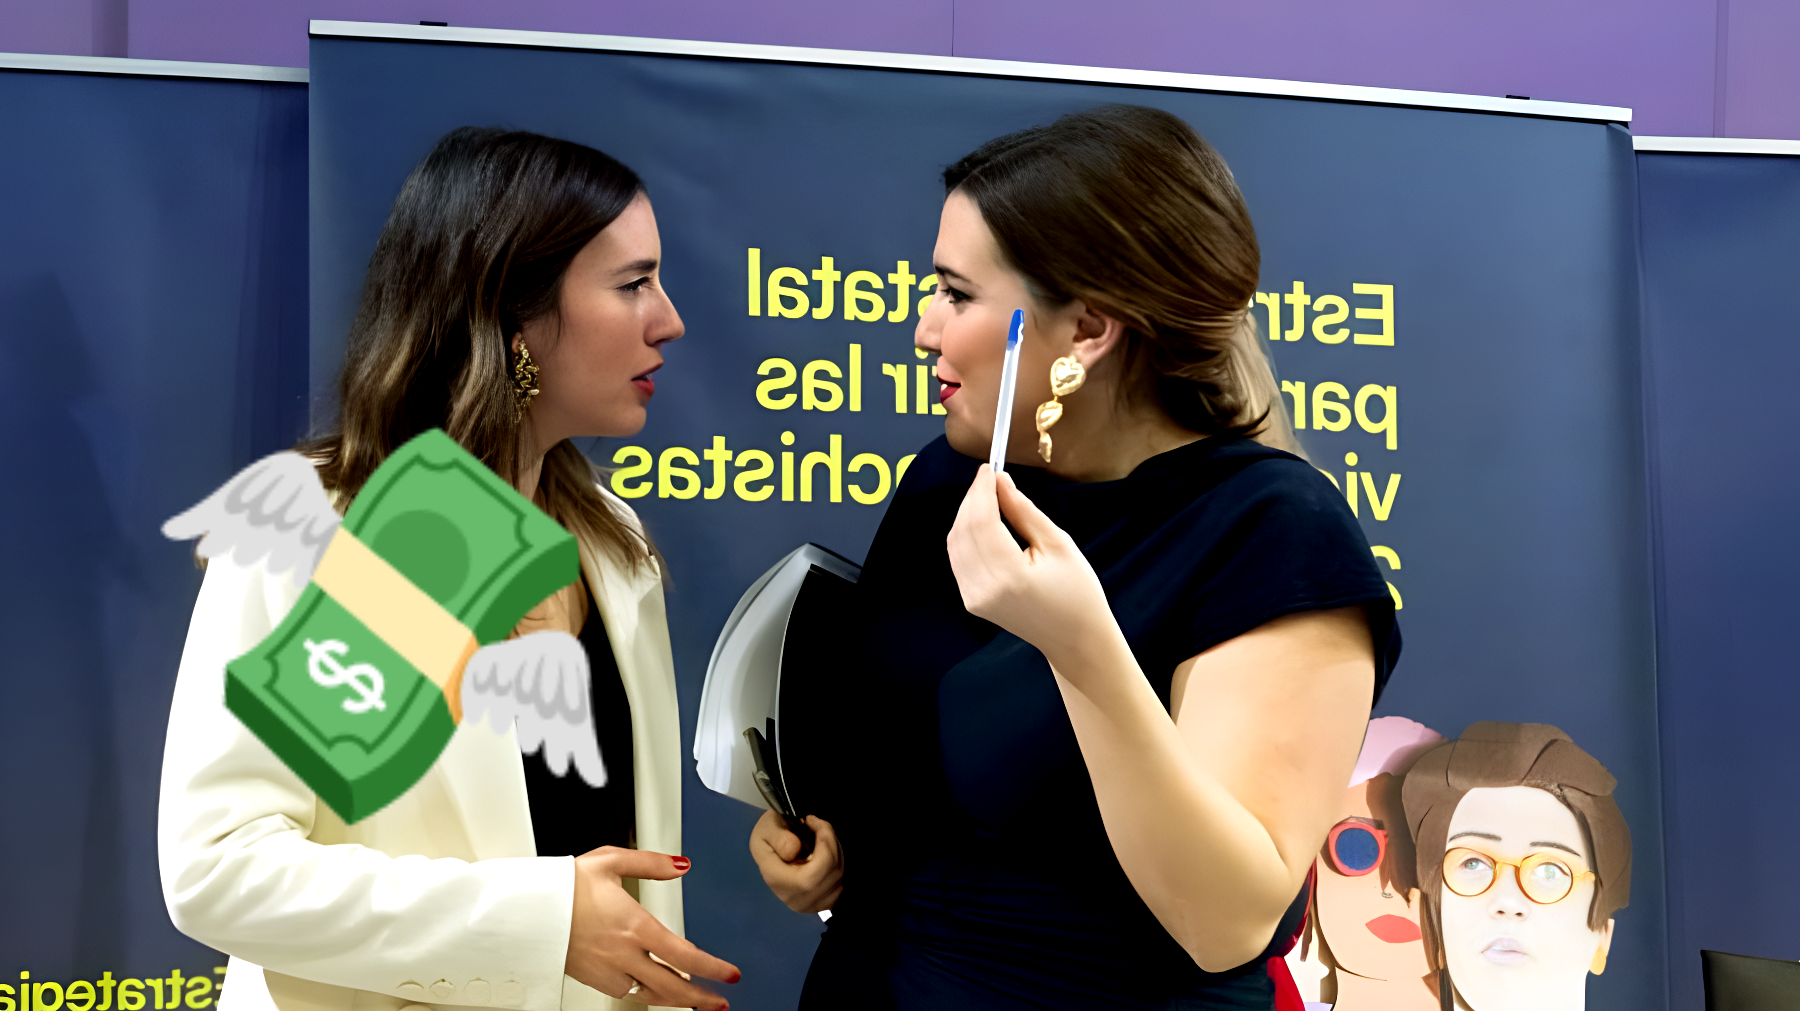 Los ex ministros Irene Montero y Garzón, entre privilegios y controversias: "Sus sueldos podrían sorprenderte"